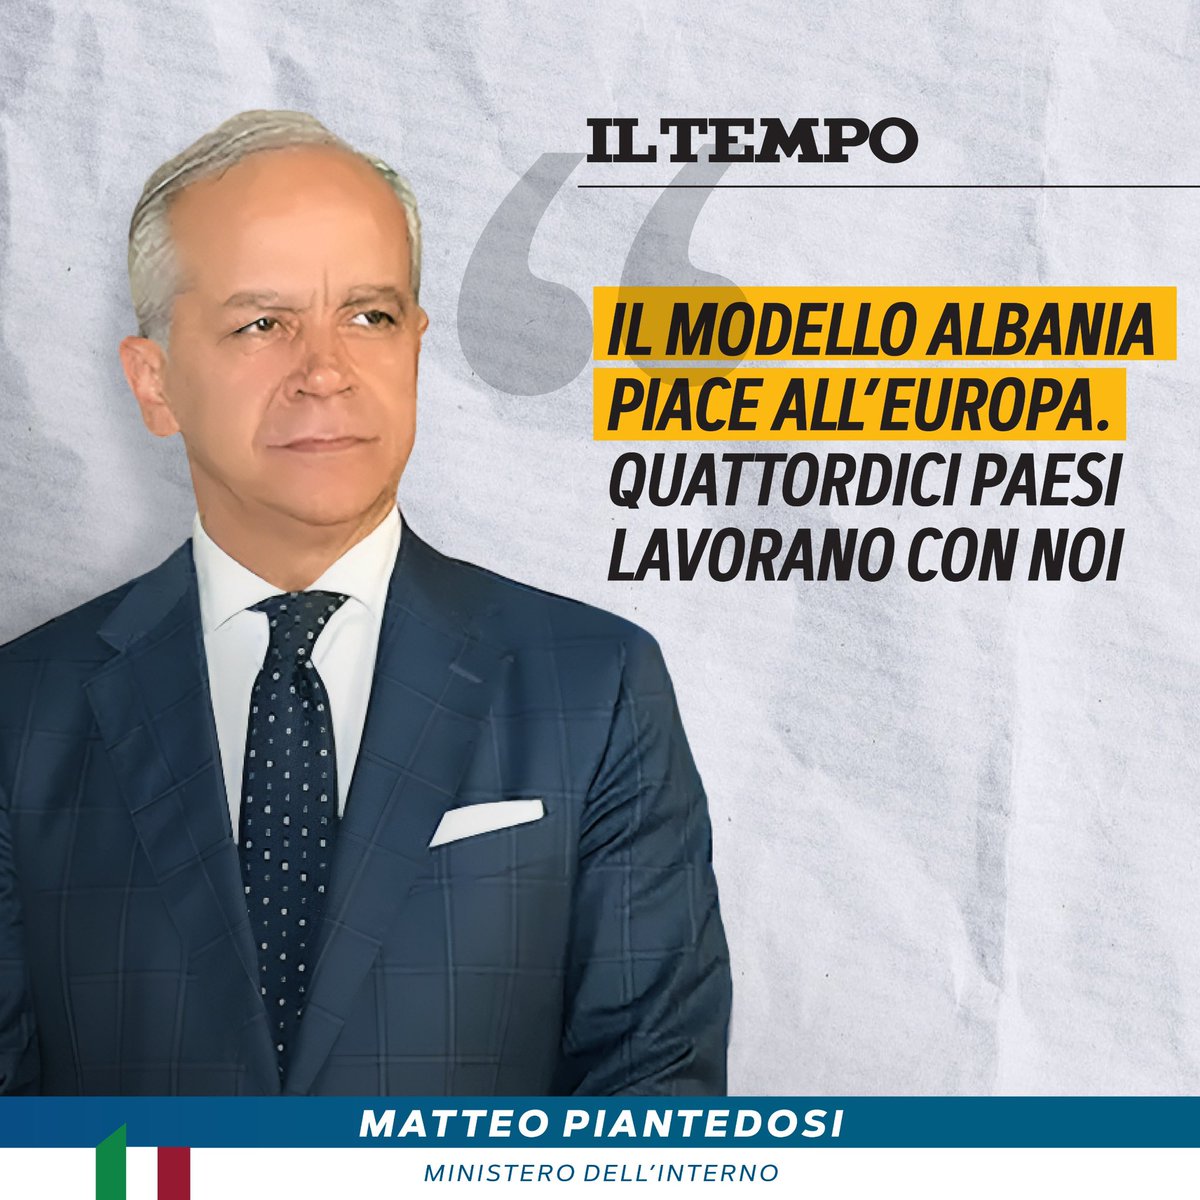 Il Protocollo Italia-Albania è considerato un esempio di collaborazione virtuosa che ha suscitato interesse nelle cancellerie europee. Dimostrazione ne è la lettera a firma mia e di altri 14 Ministri dell’Interno della UE, appartenenti a Governi di ispirazioni politiche anche